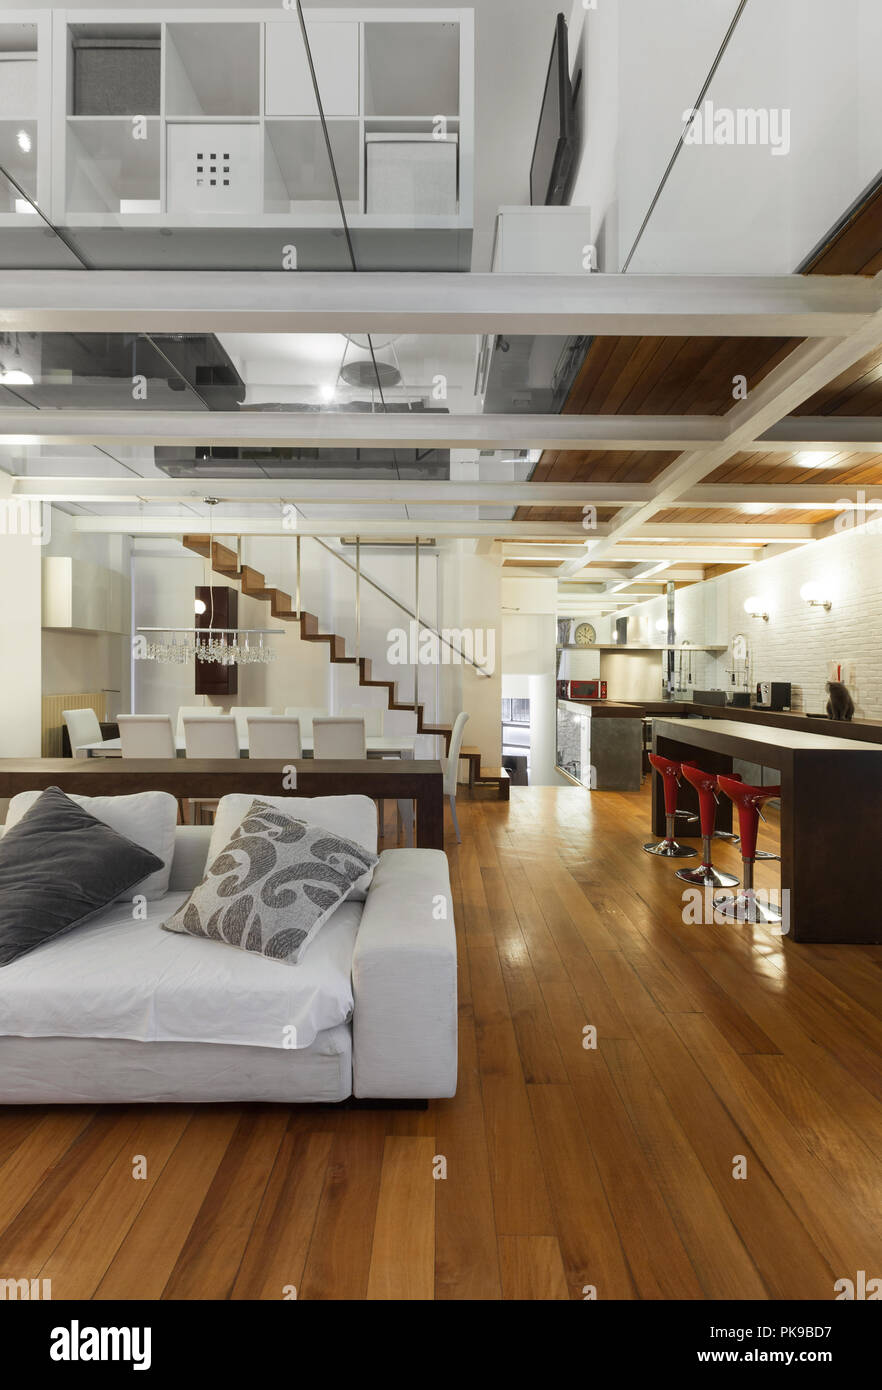 L'architecture, vaste loft avec un mobilier moderne, salle de séjour Banque D'Images